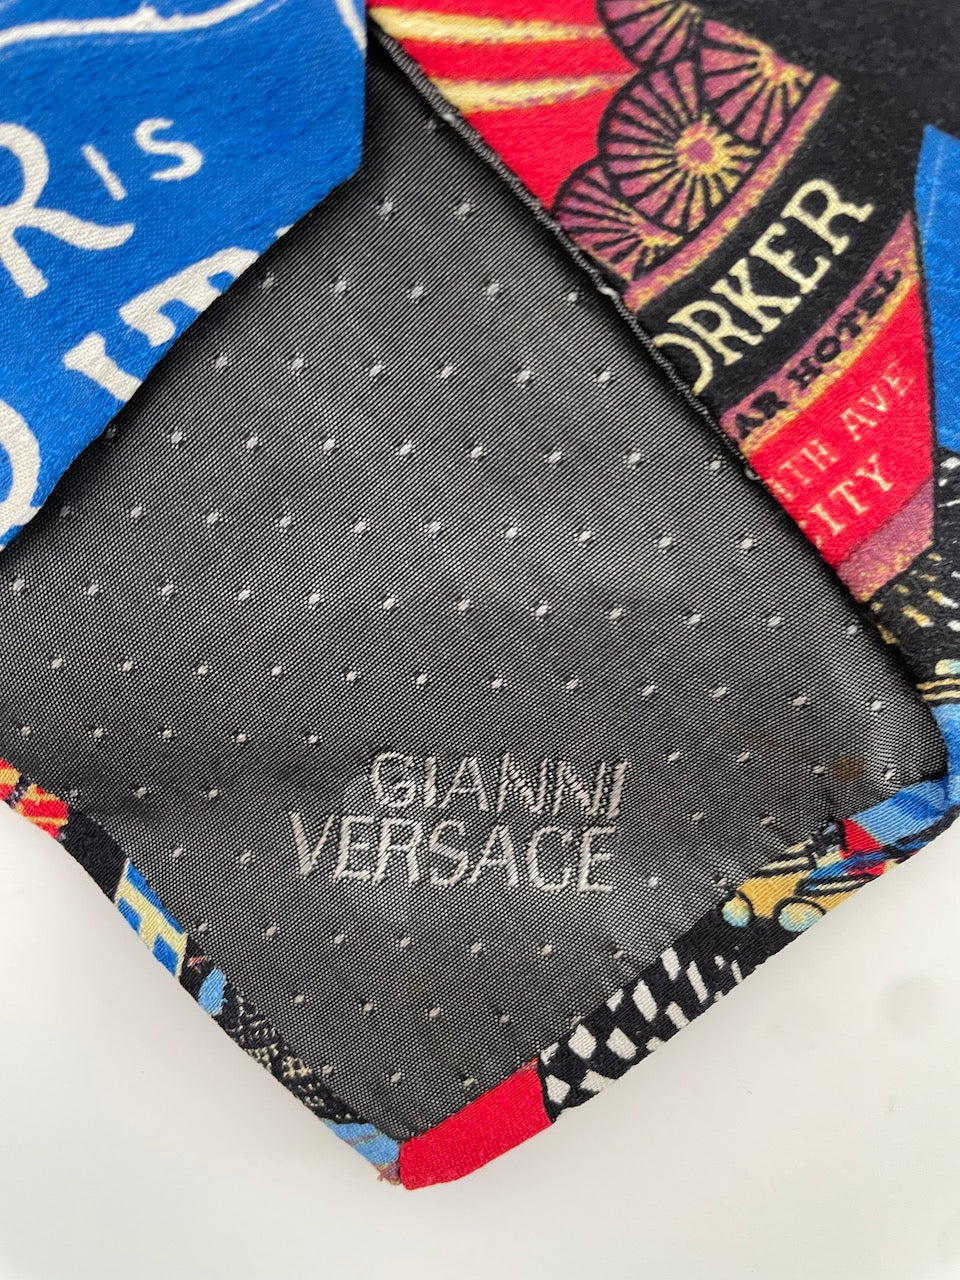 Gianni Versace stropdas 'hotel new yorker' vintage